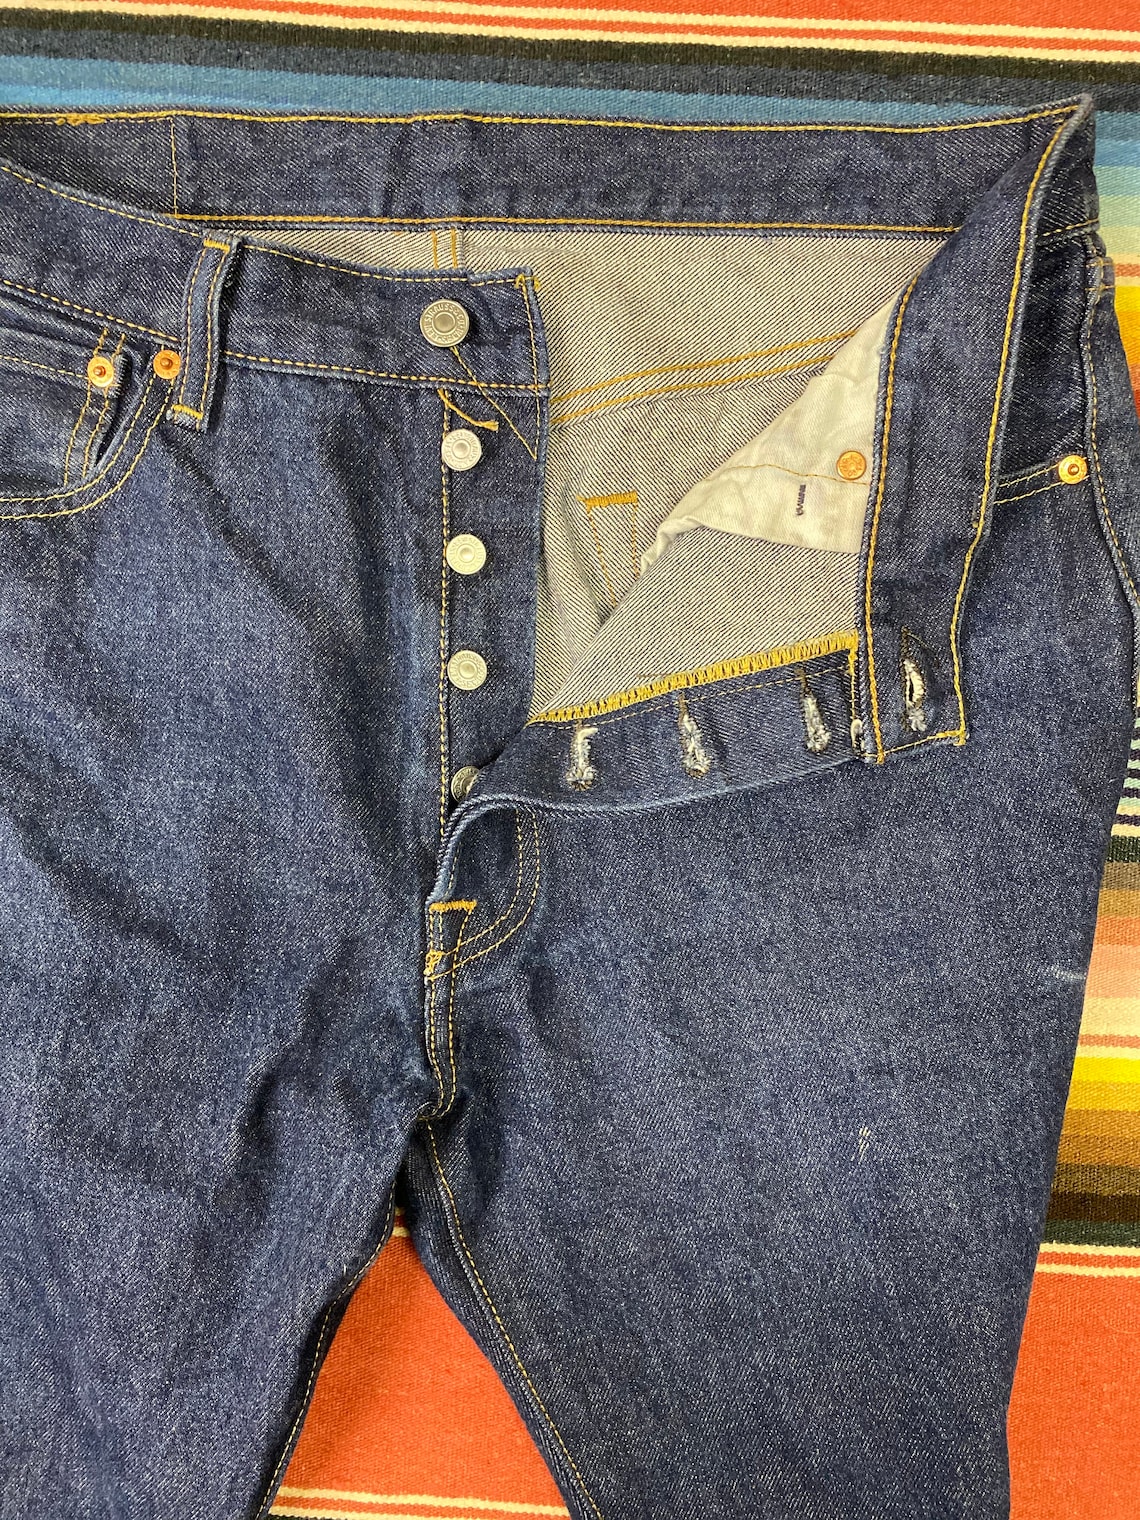 Levi's 501 denim cowboy boot cut straight jeans pants size | Etsy